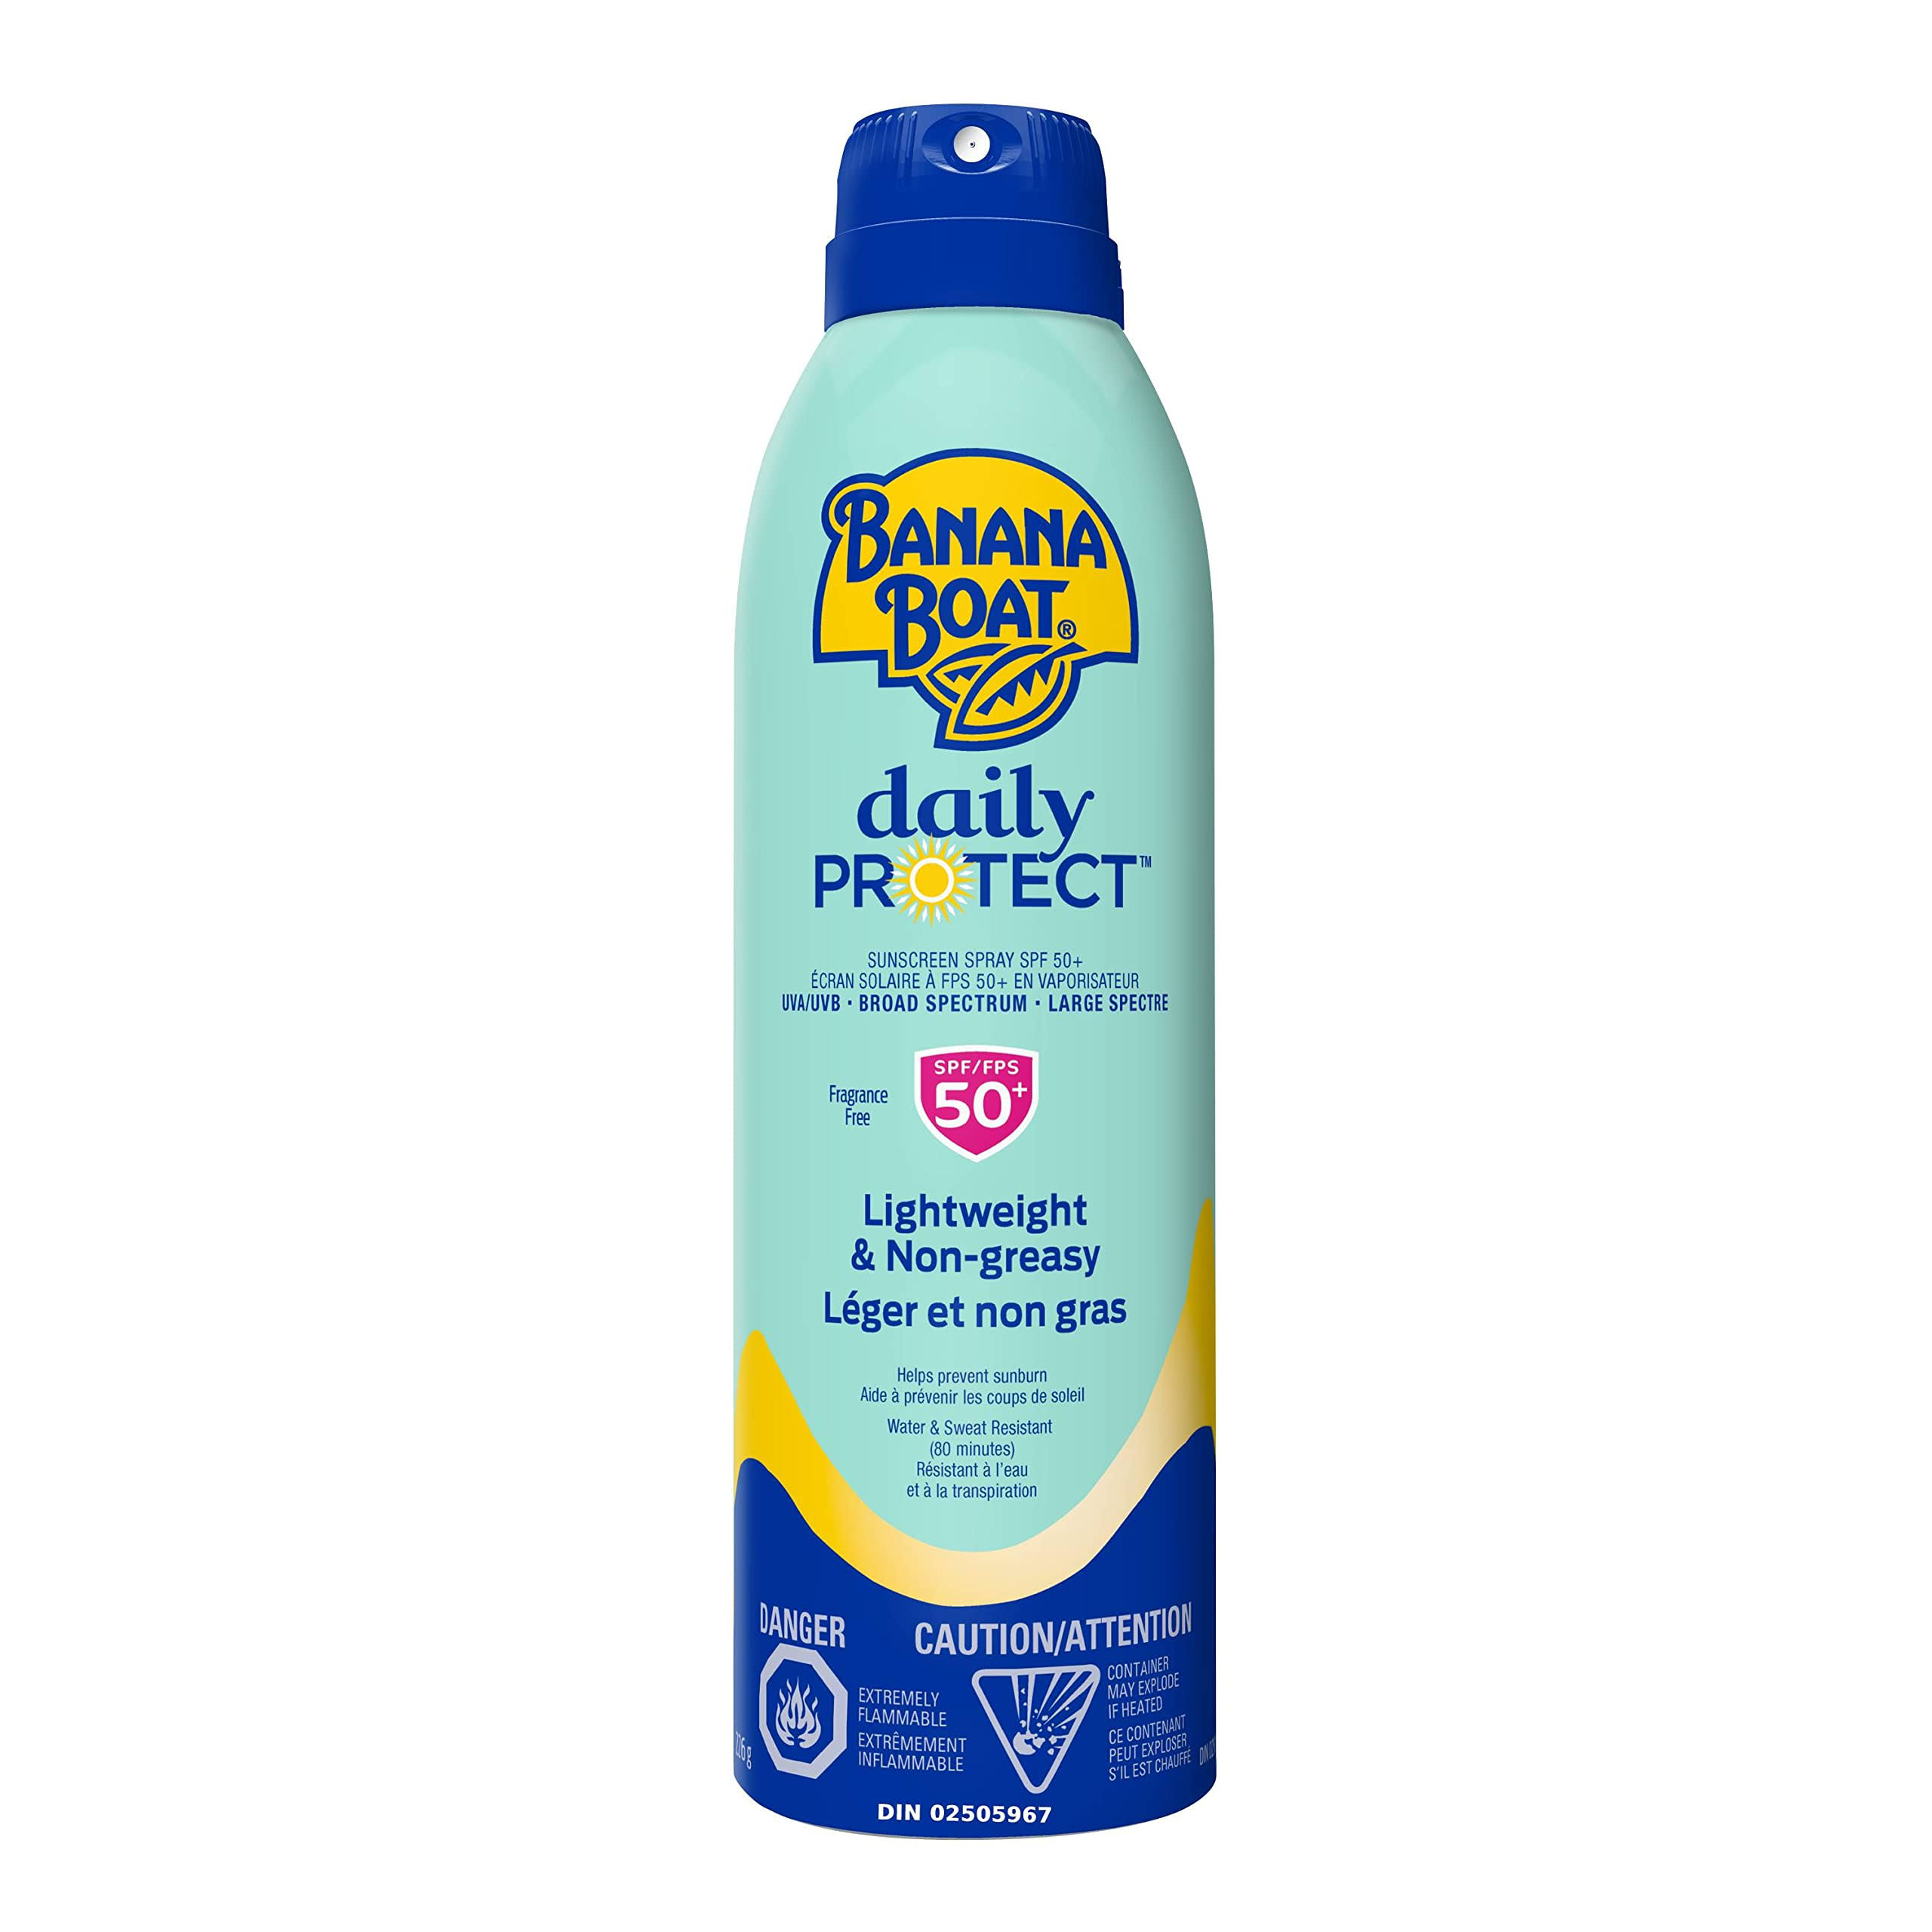 Banana Boat Daily Protect Daily Sunscreen Spray 50+ 226.0 G